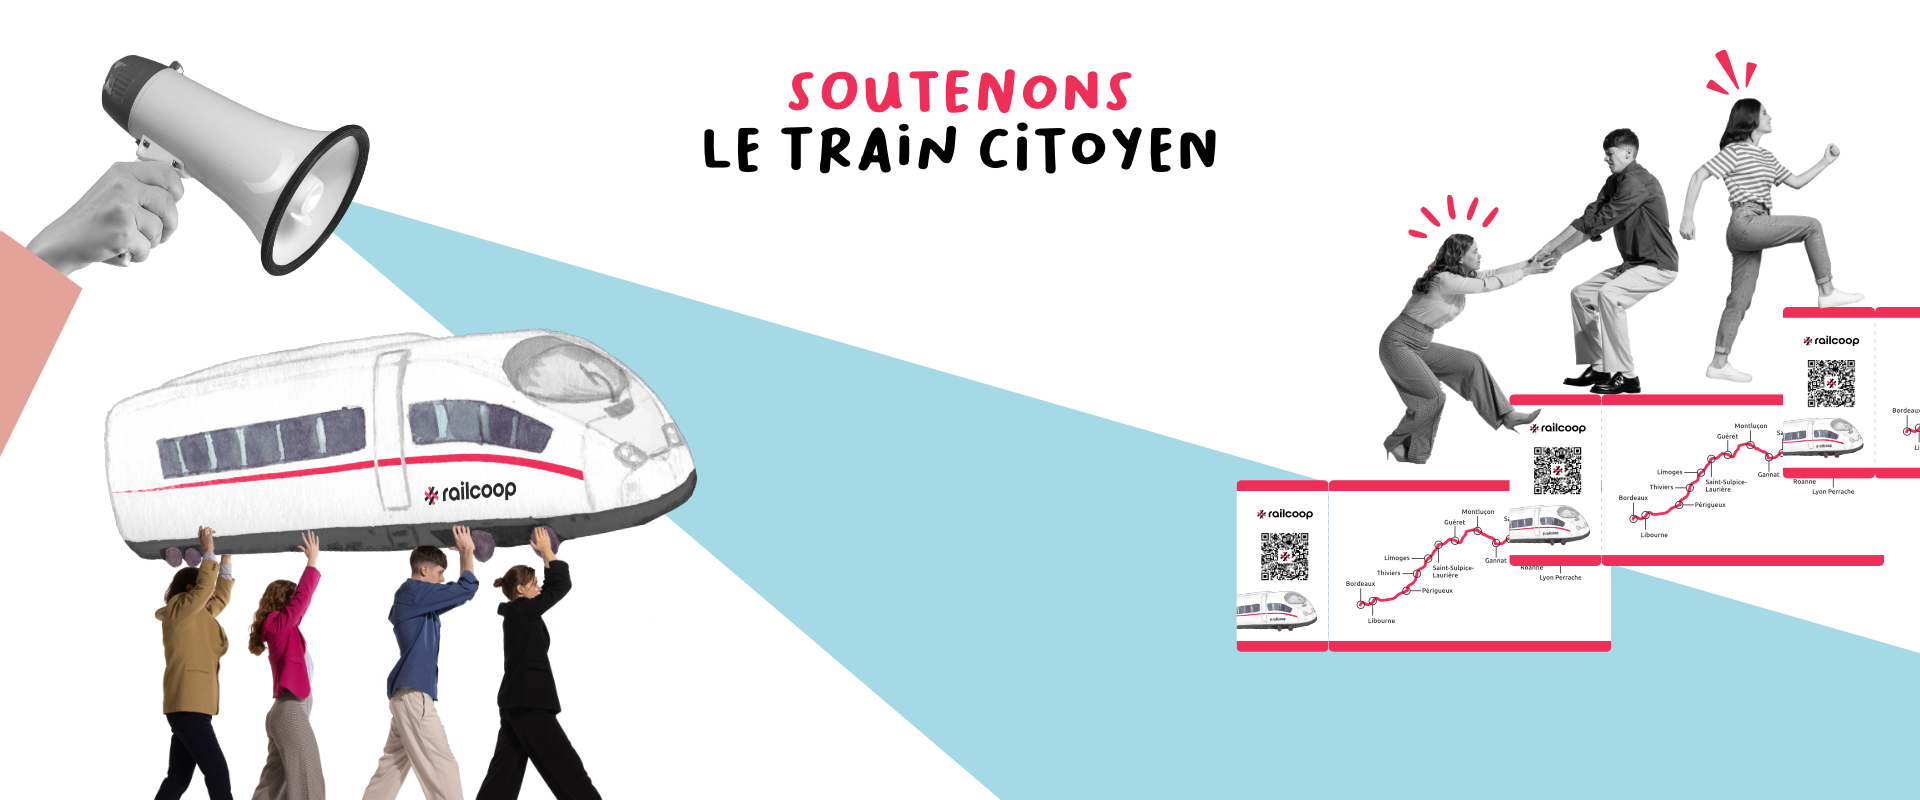 Soutenir un train citoyen et la ligne Lyon-Bordeaux